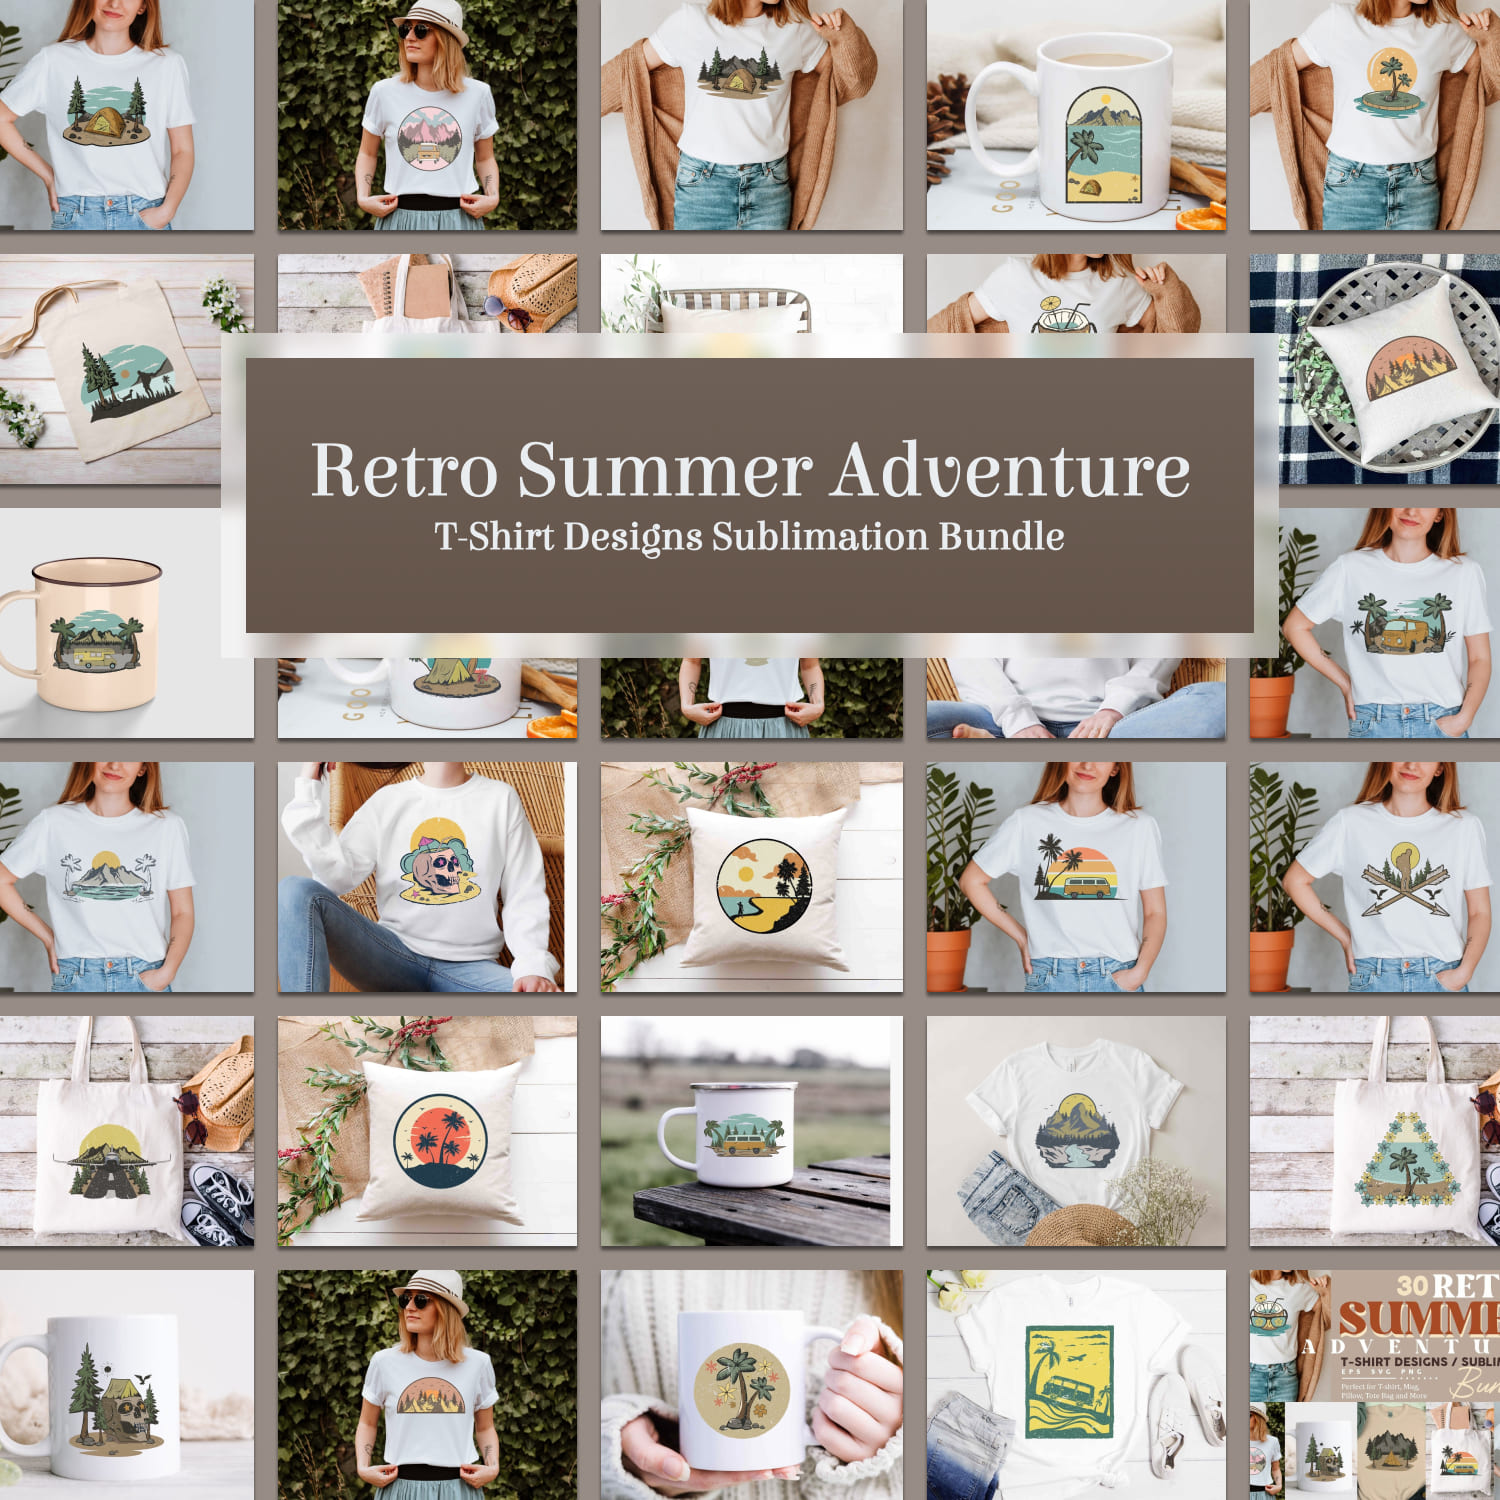 Retro Summer Adventure T-shirt Designs Sublimation Bundle.